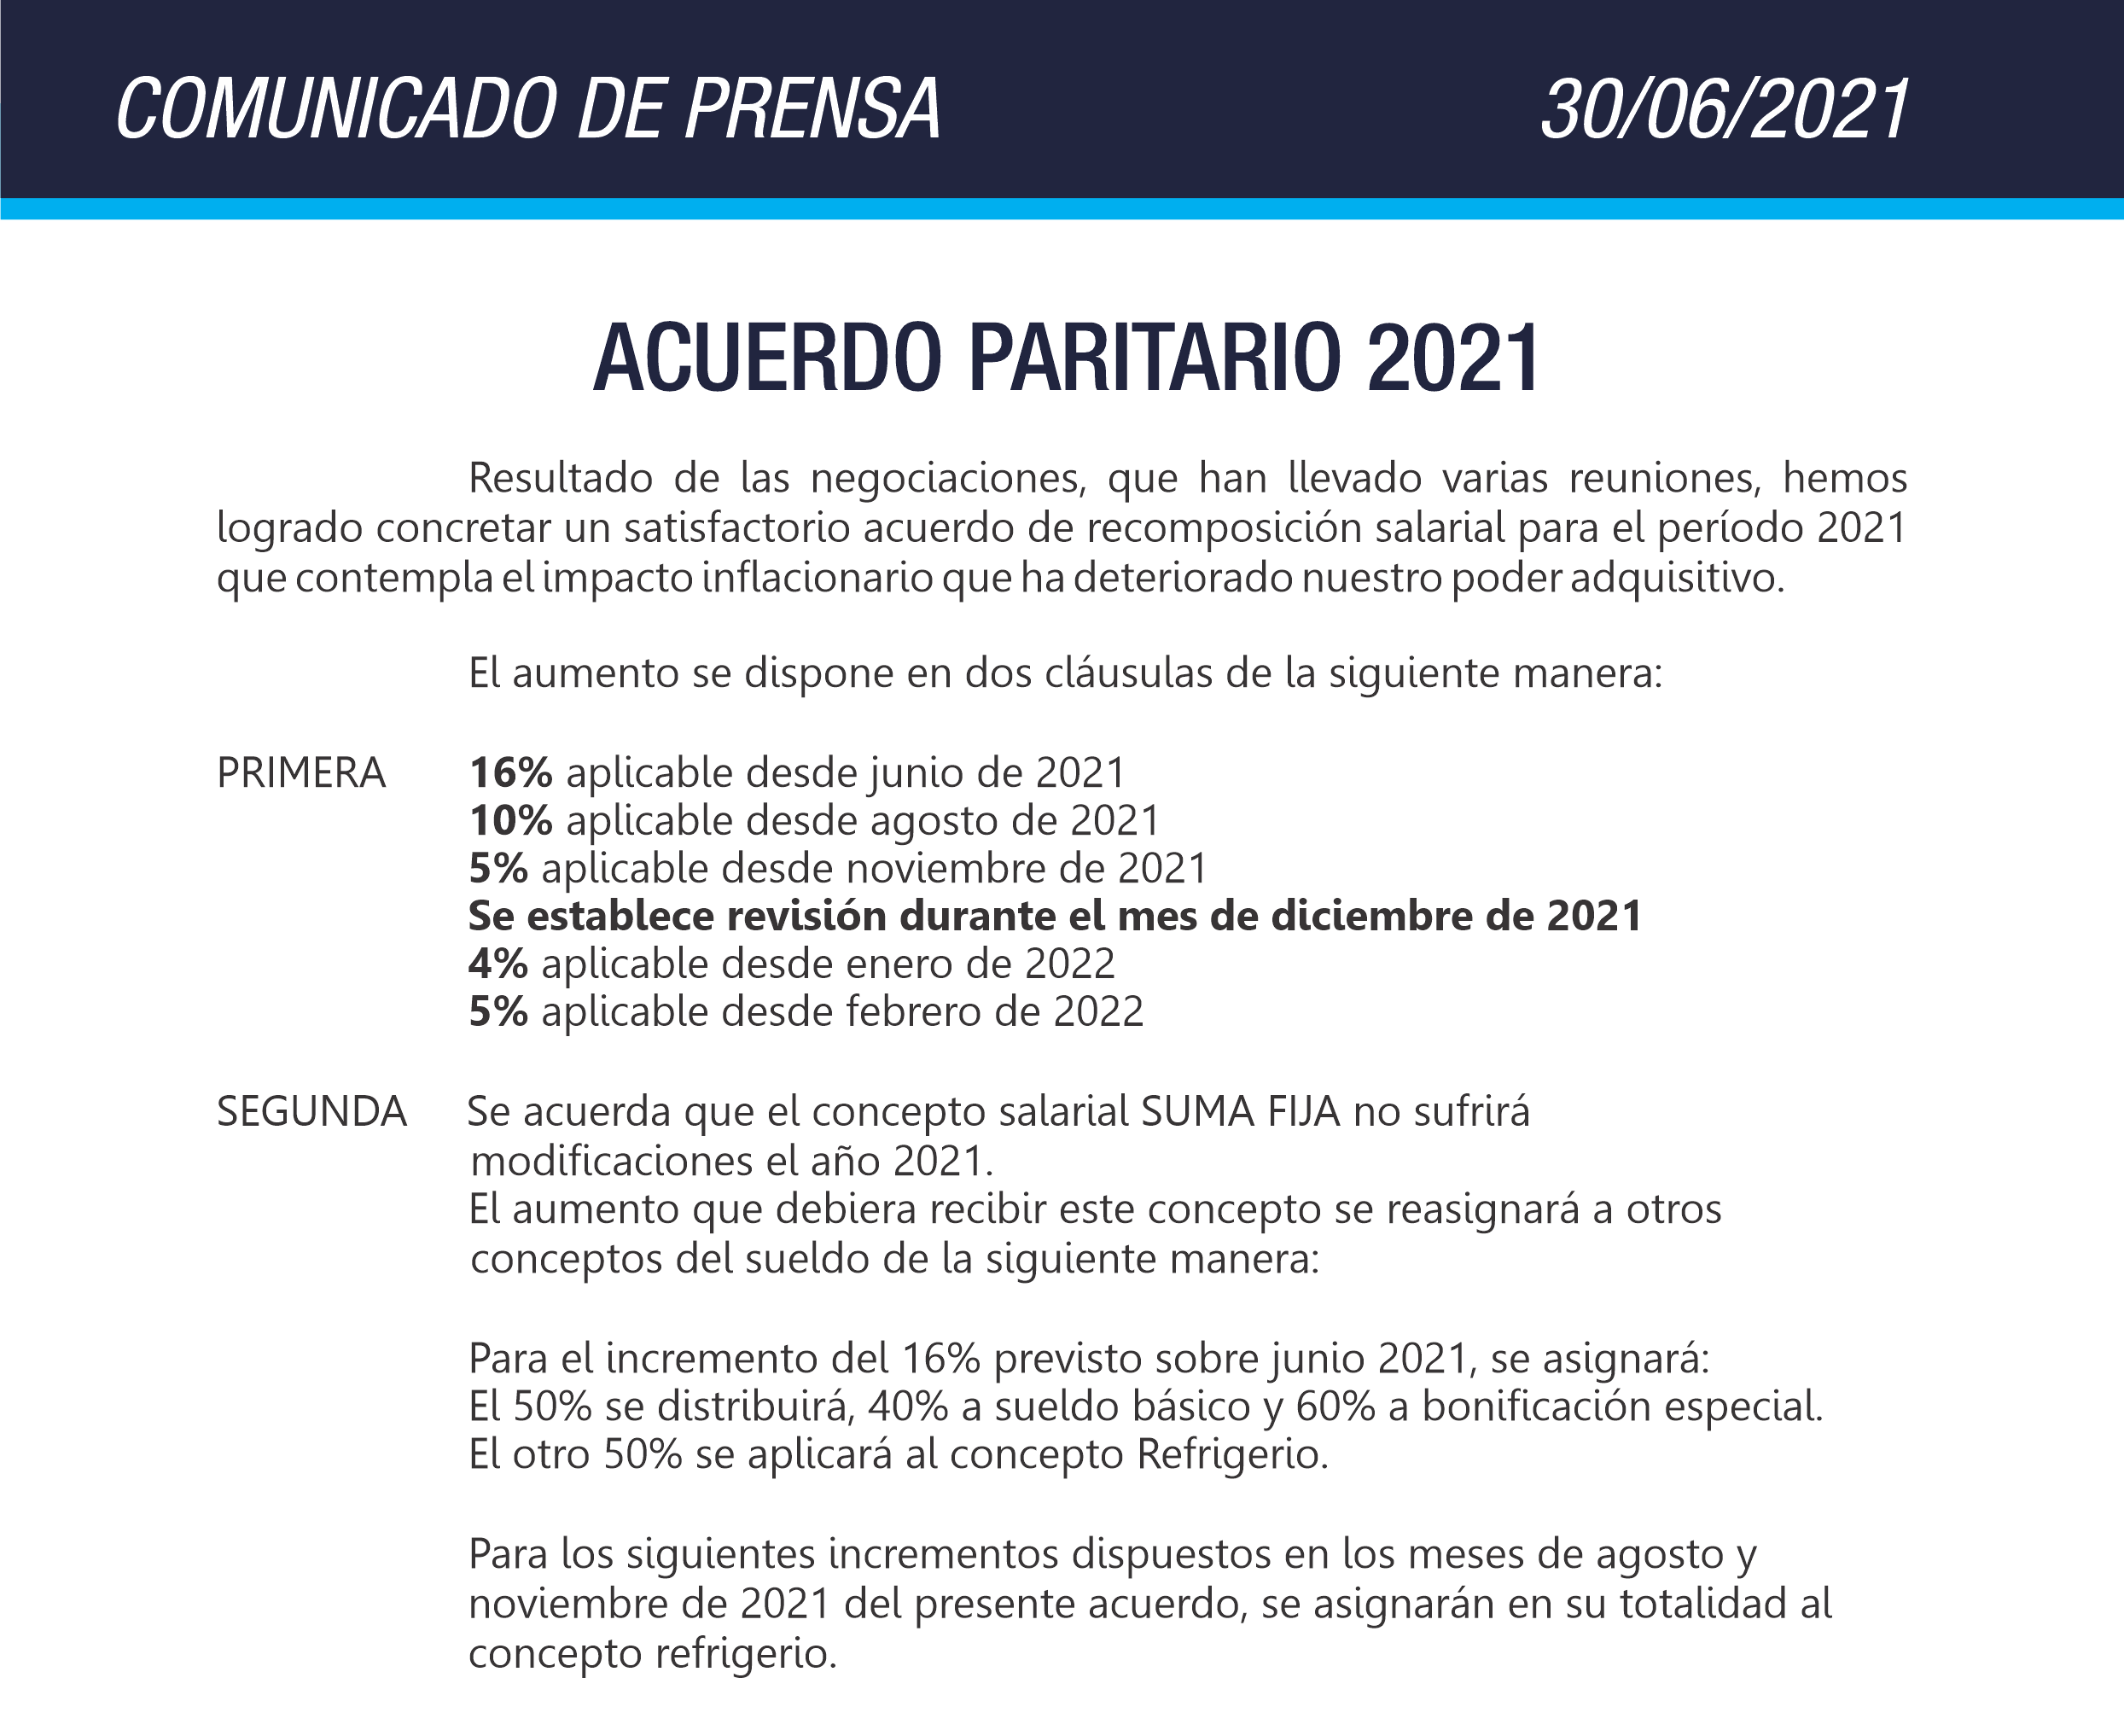 ACUERDO PARITARIO 2021